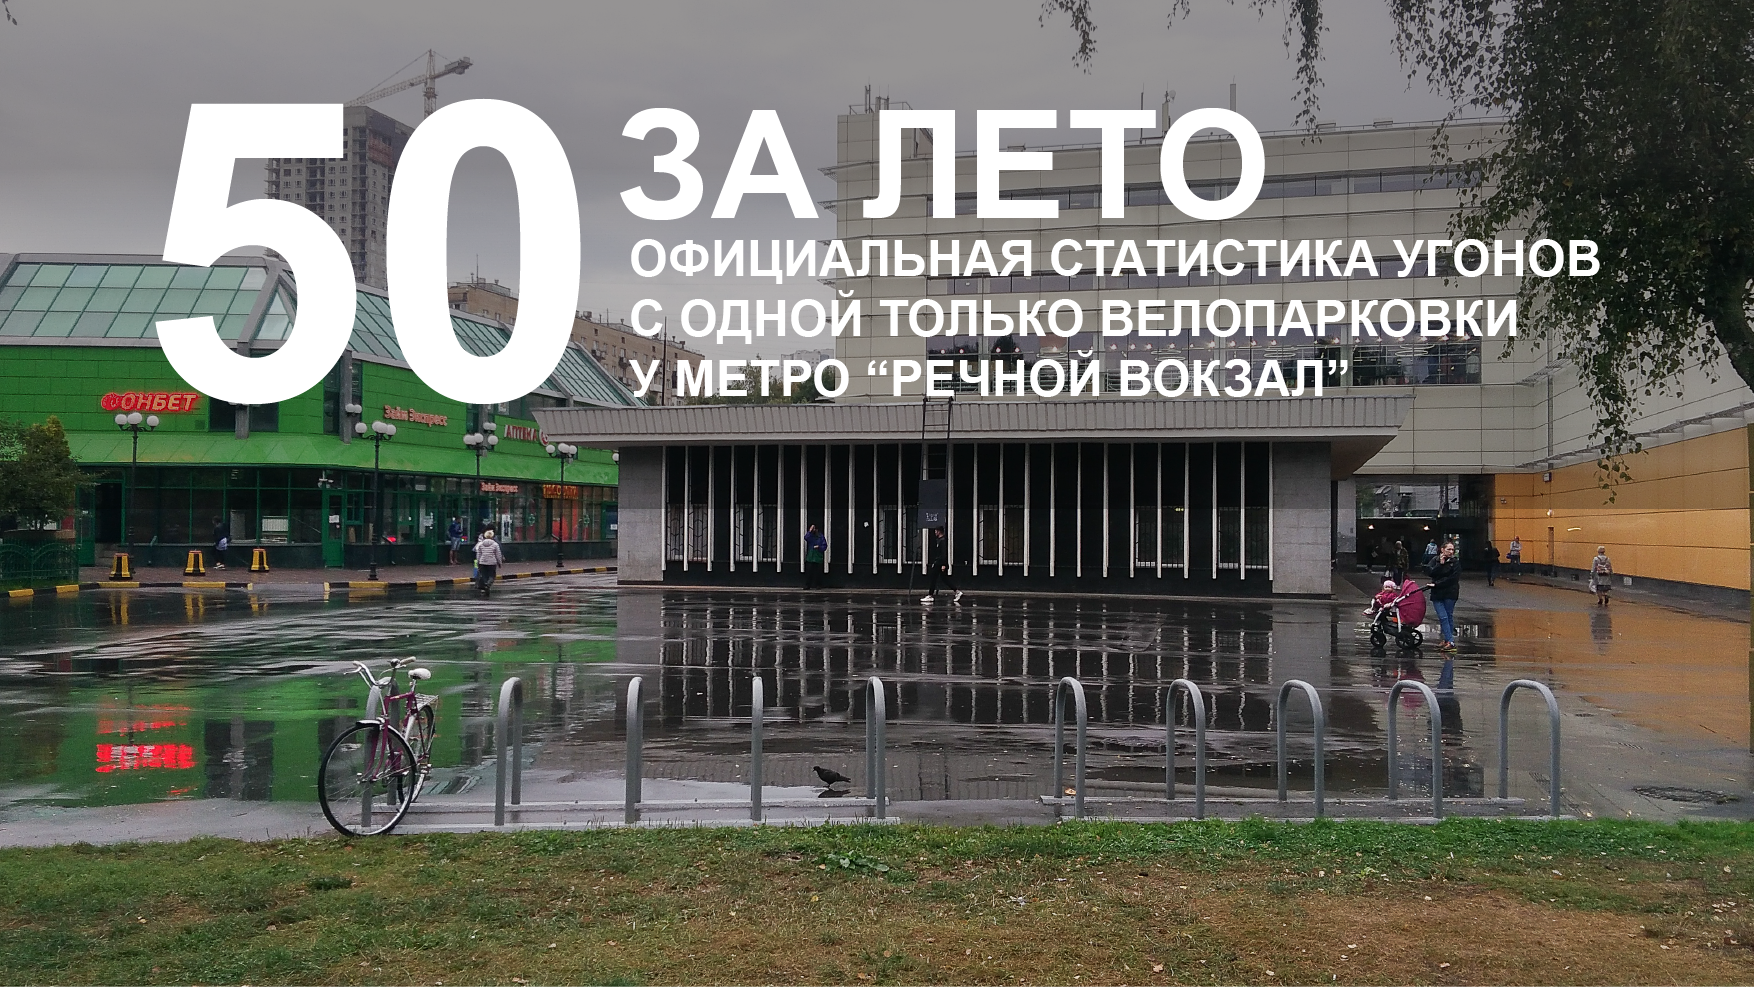 50 за лето: официальная статистика угонов с одной только велопарковки у метро Речной вокзал